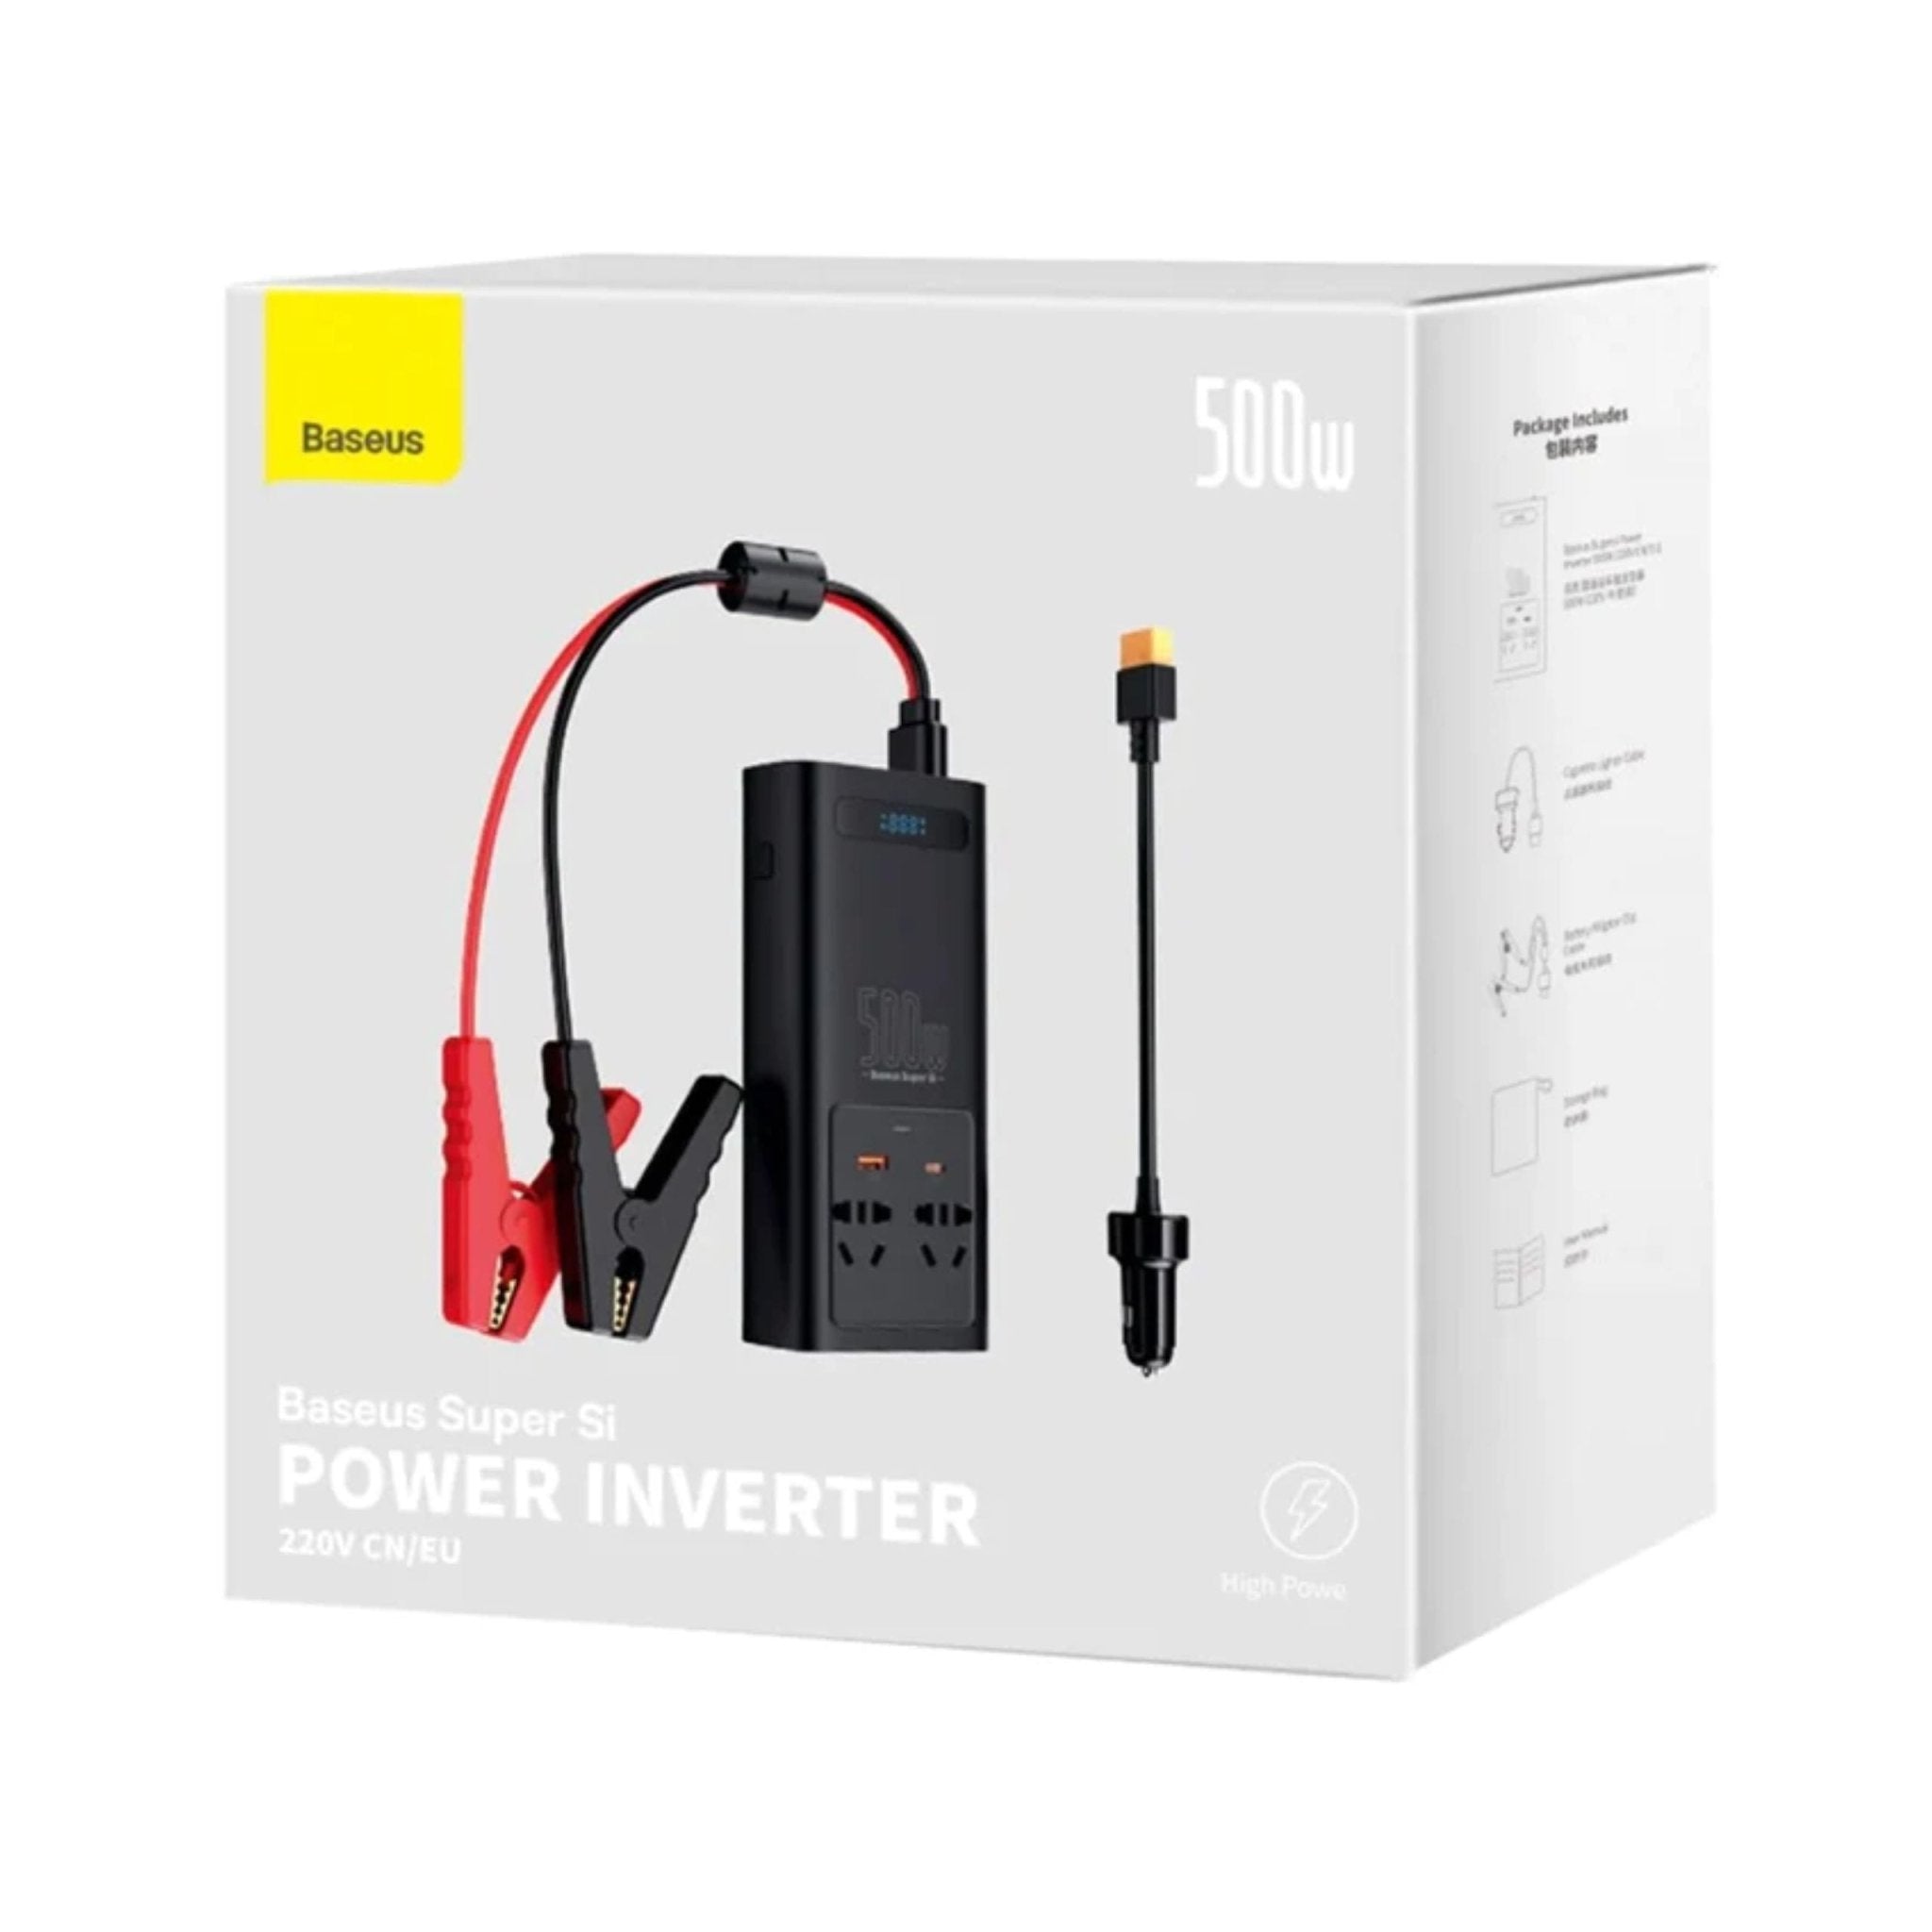 Baseus Super Si Power Inverter 500W 220V CN - EU Plug - Black